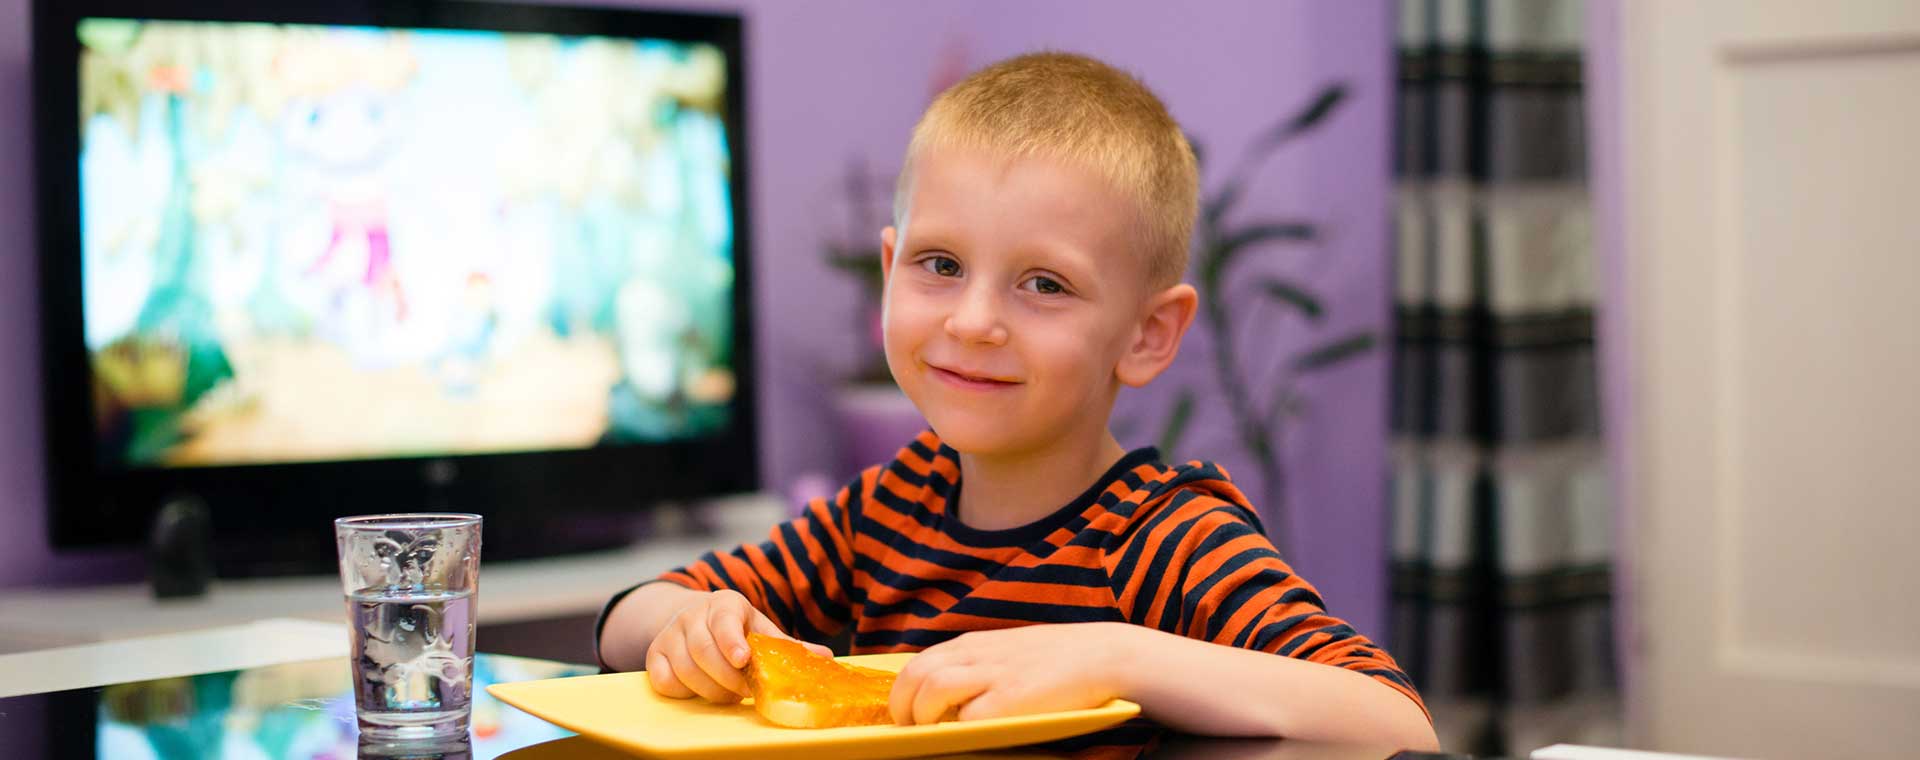 Le temps d’écran peut avoir des effets négatifs sur le développement cognitif des enfants.